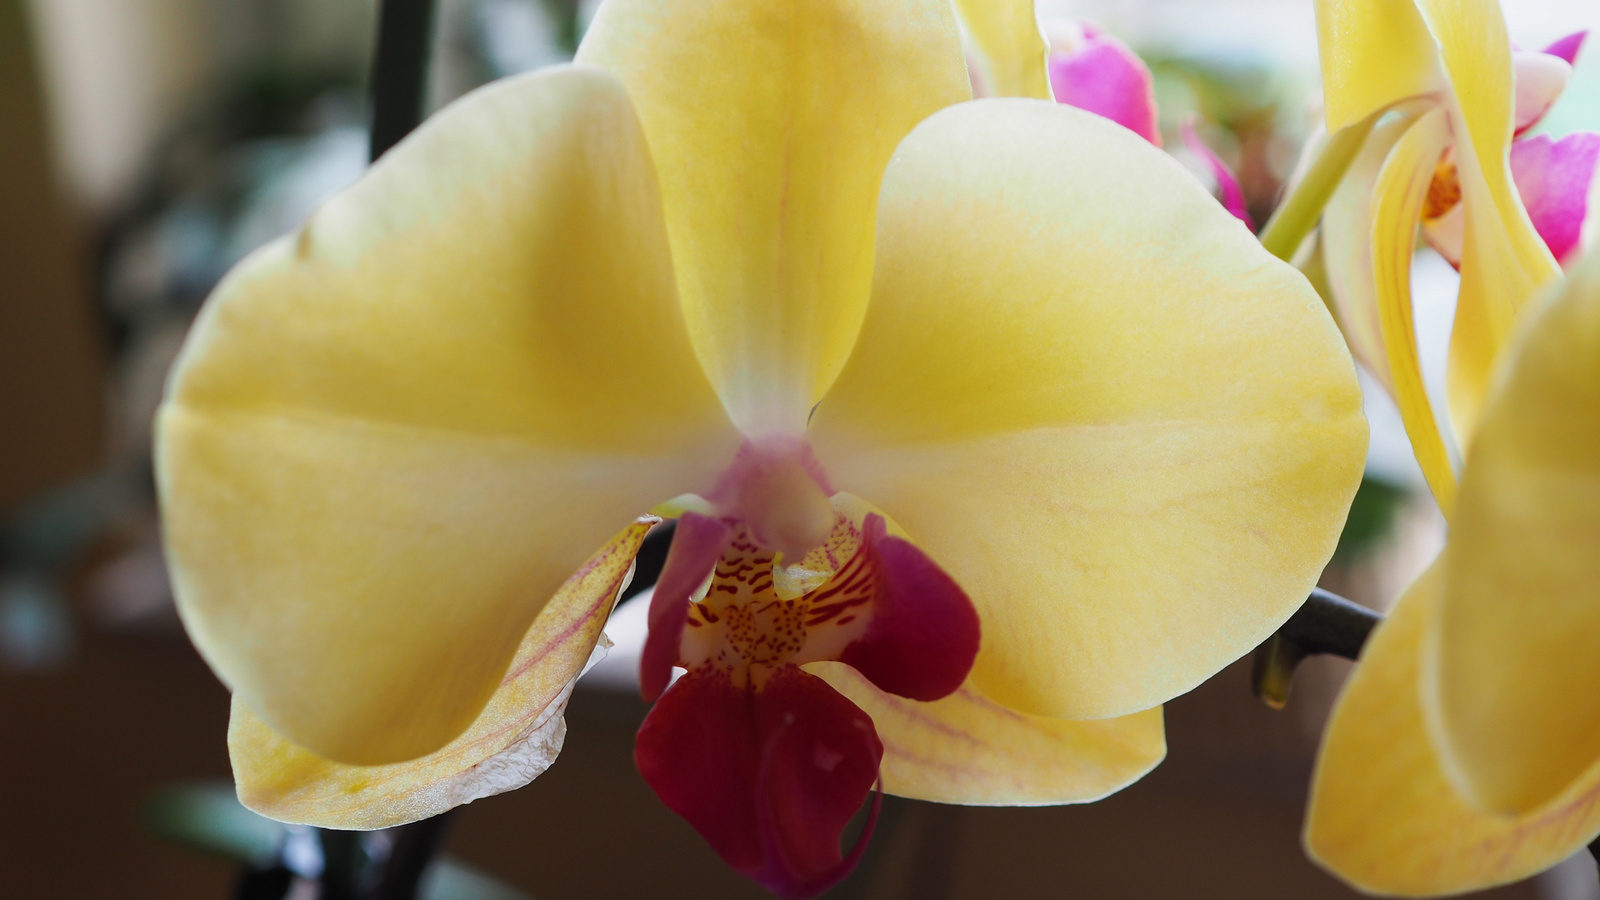 Otthoni orchideáim, 2022 03, SzG3